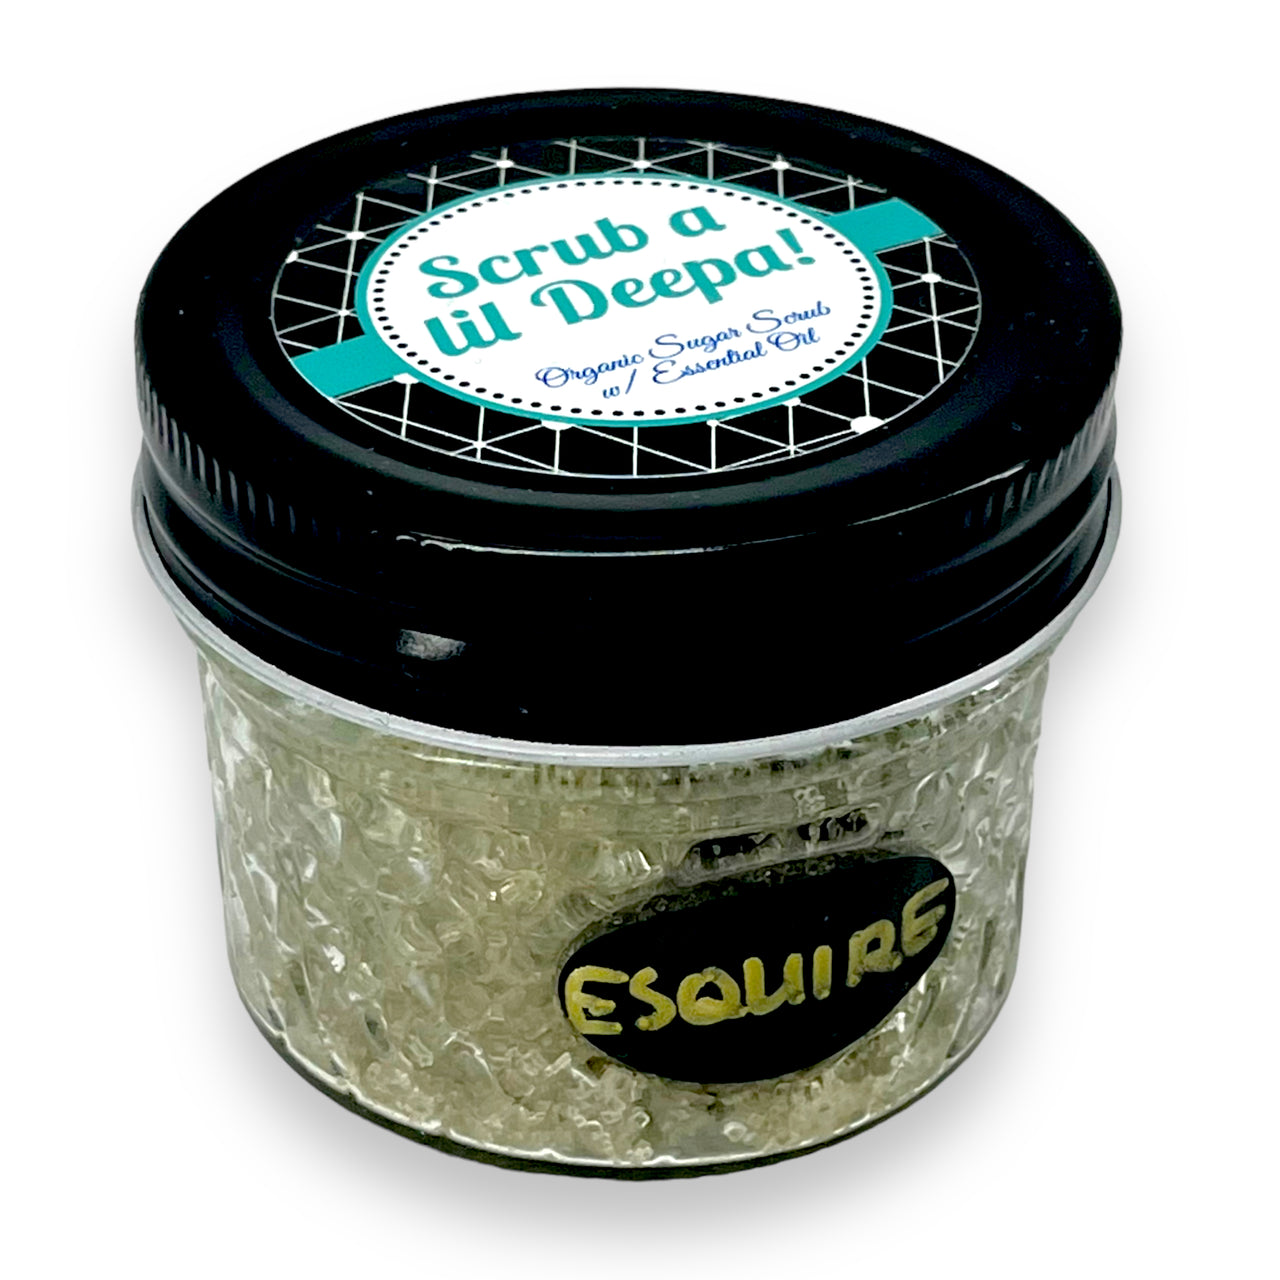 Organic Body Scrub - Esquire (Clary Sage & Cedarwood)